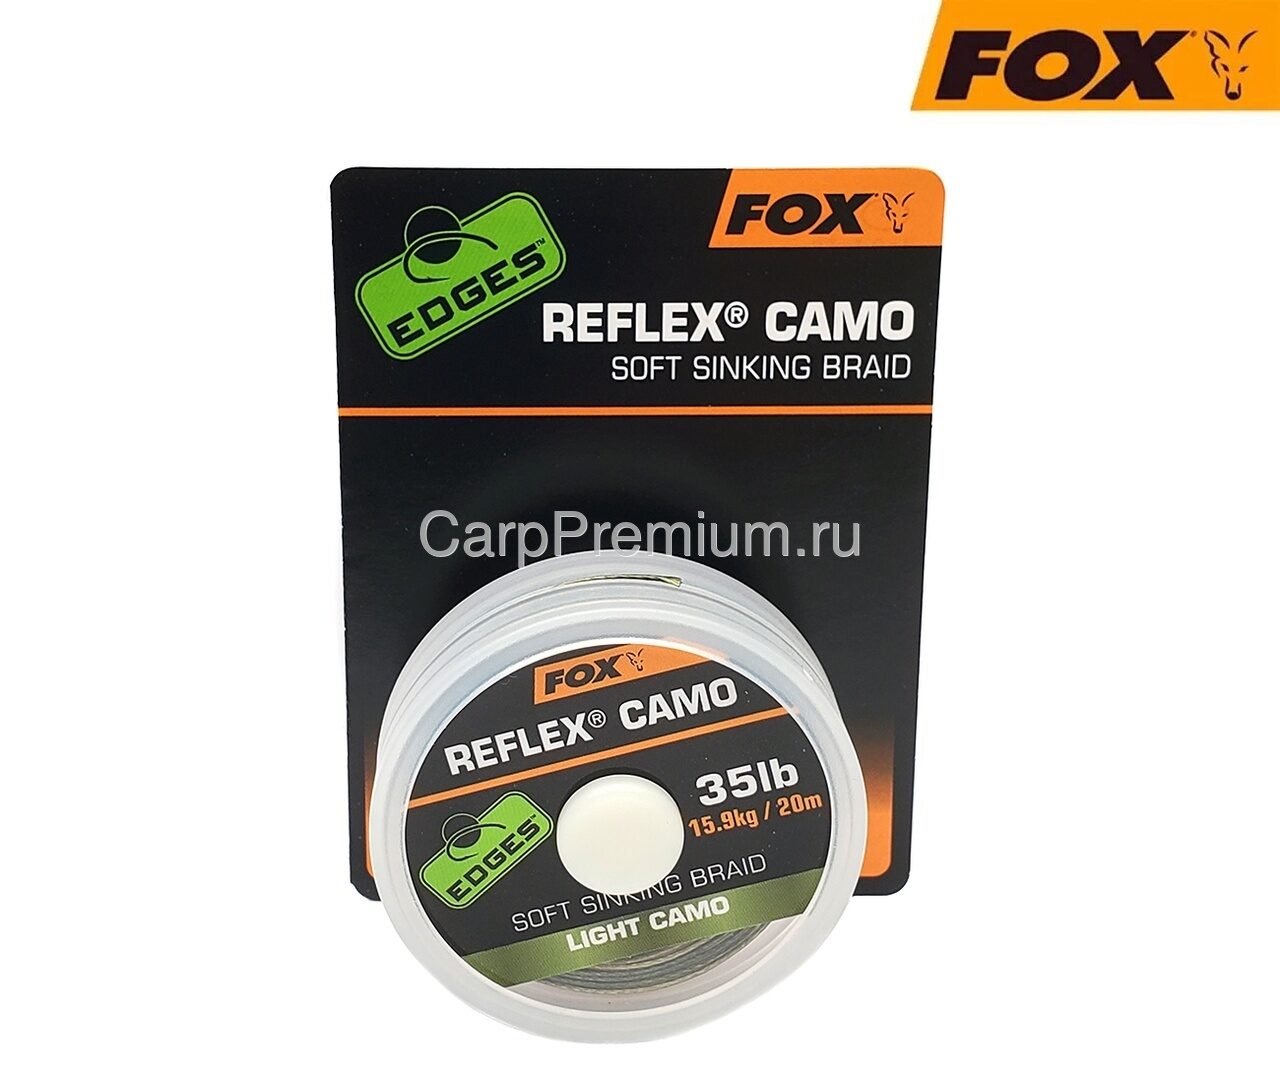 Поводковый материал без оплетки Камуфляжный Fox (Фокс) - EDGES Reflex Camo 15.9 кг / 35lb, 20 м